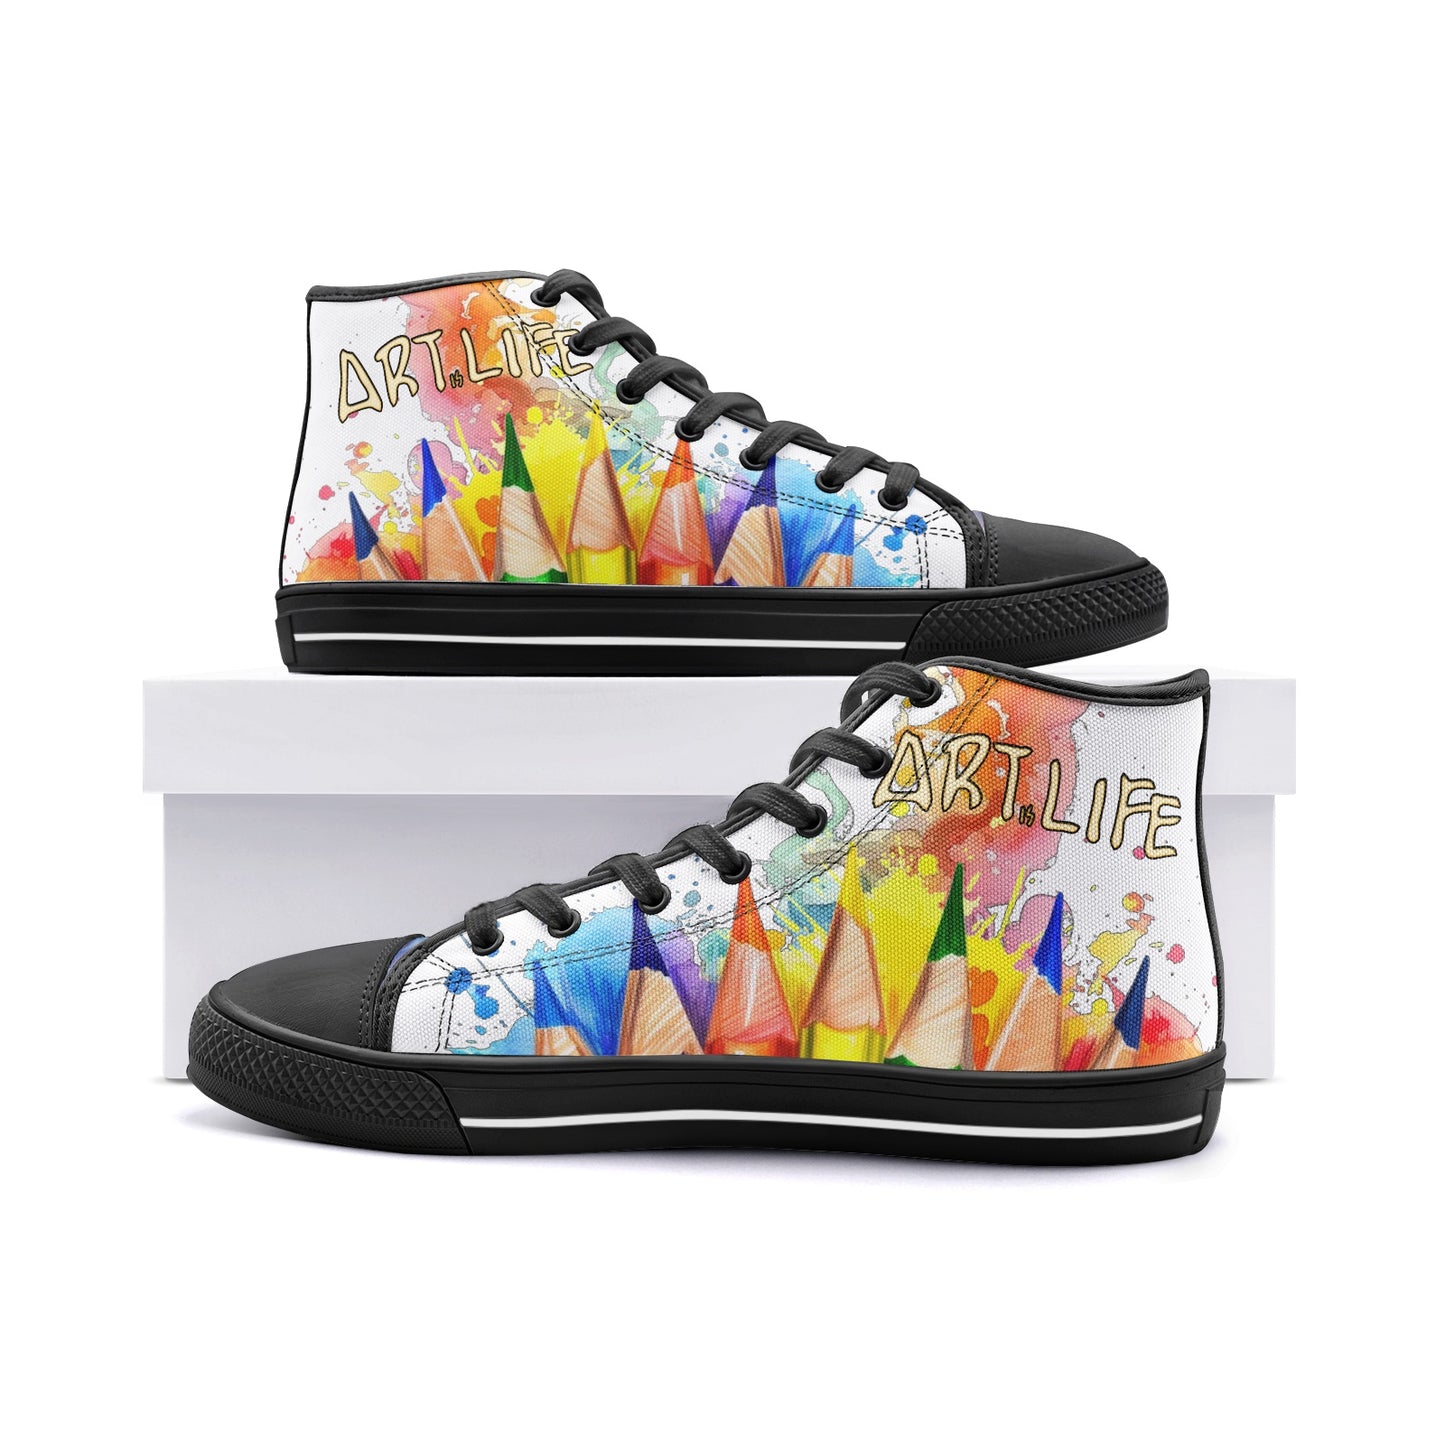 Neduz Unisex High Top Canvas Shoes - Playful Crayon Colors Print